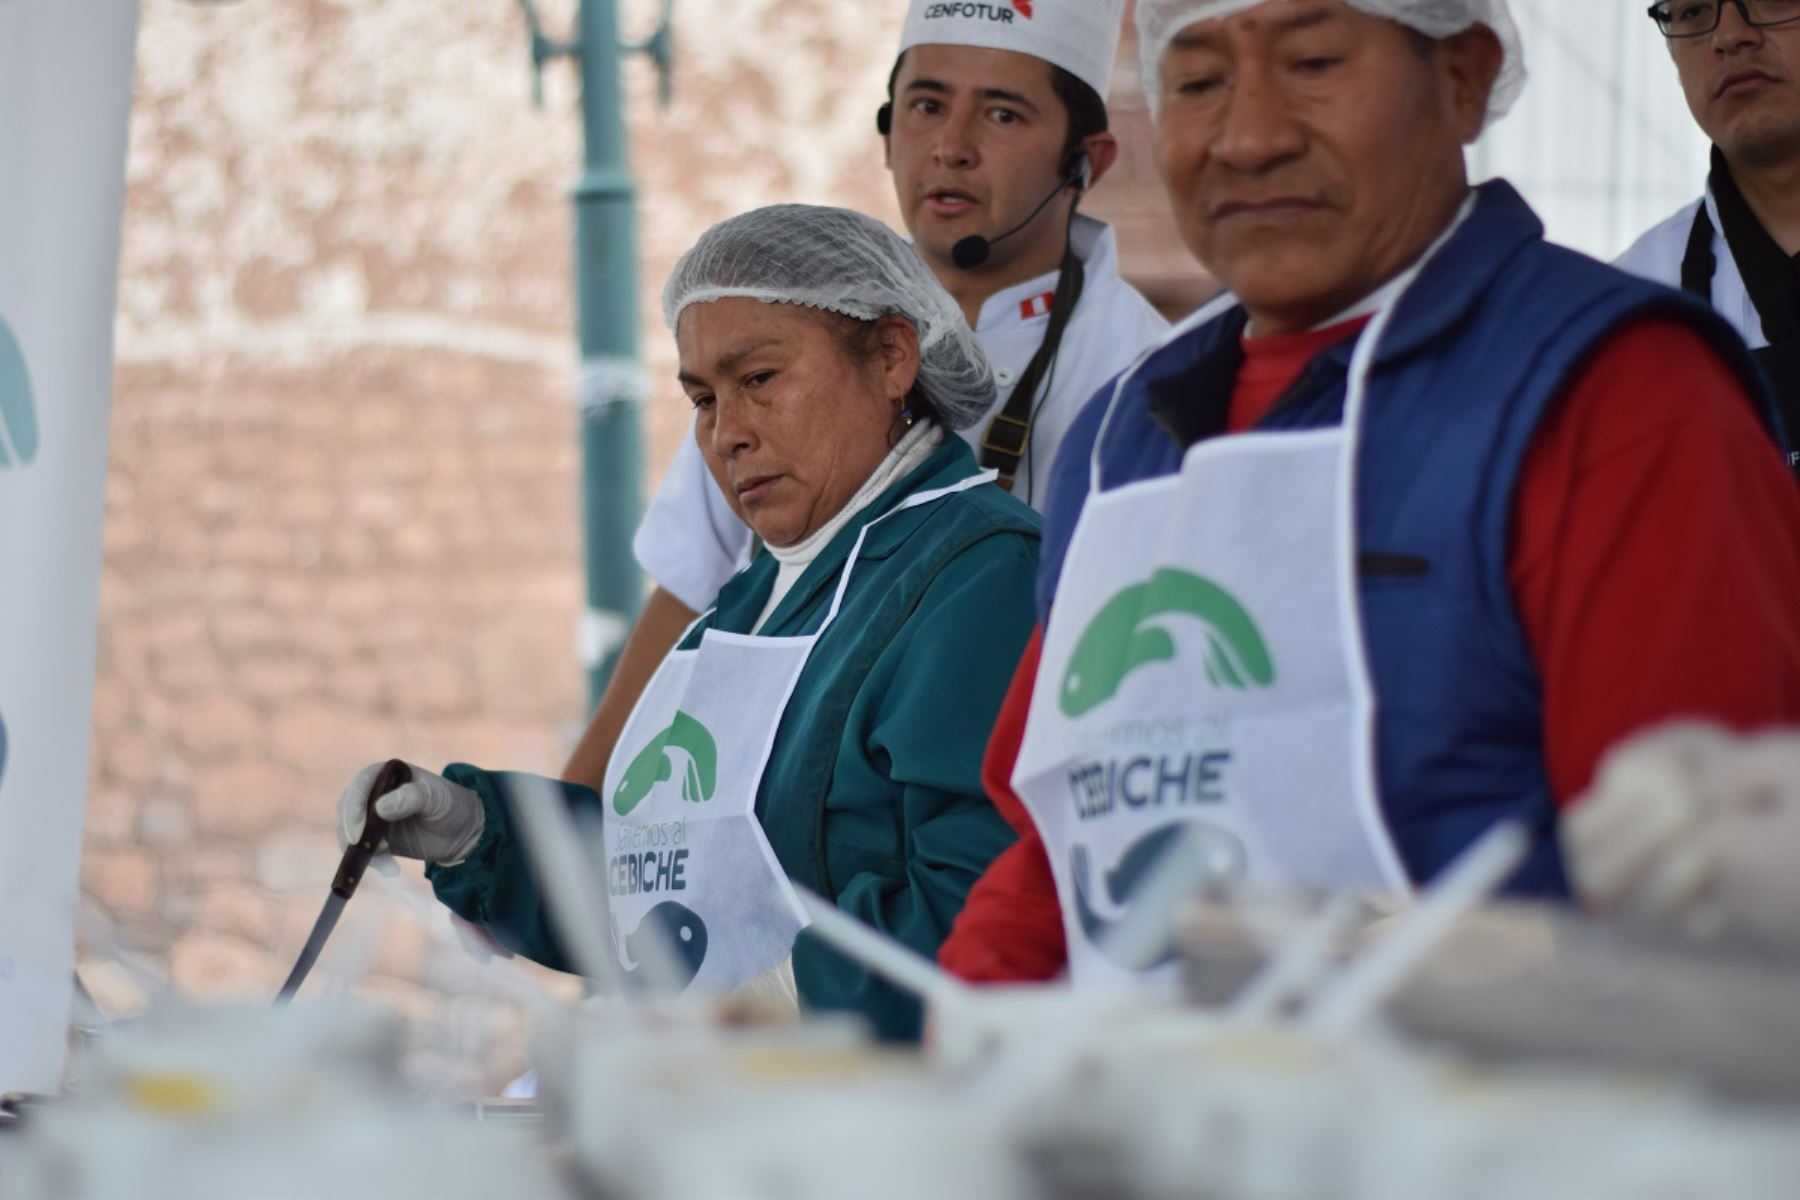 La campaña Salvemos al Cebiche llegó a la ciudad del Cusco, con motivo del Día Mundial de la Alimentación.